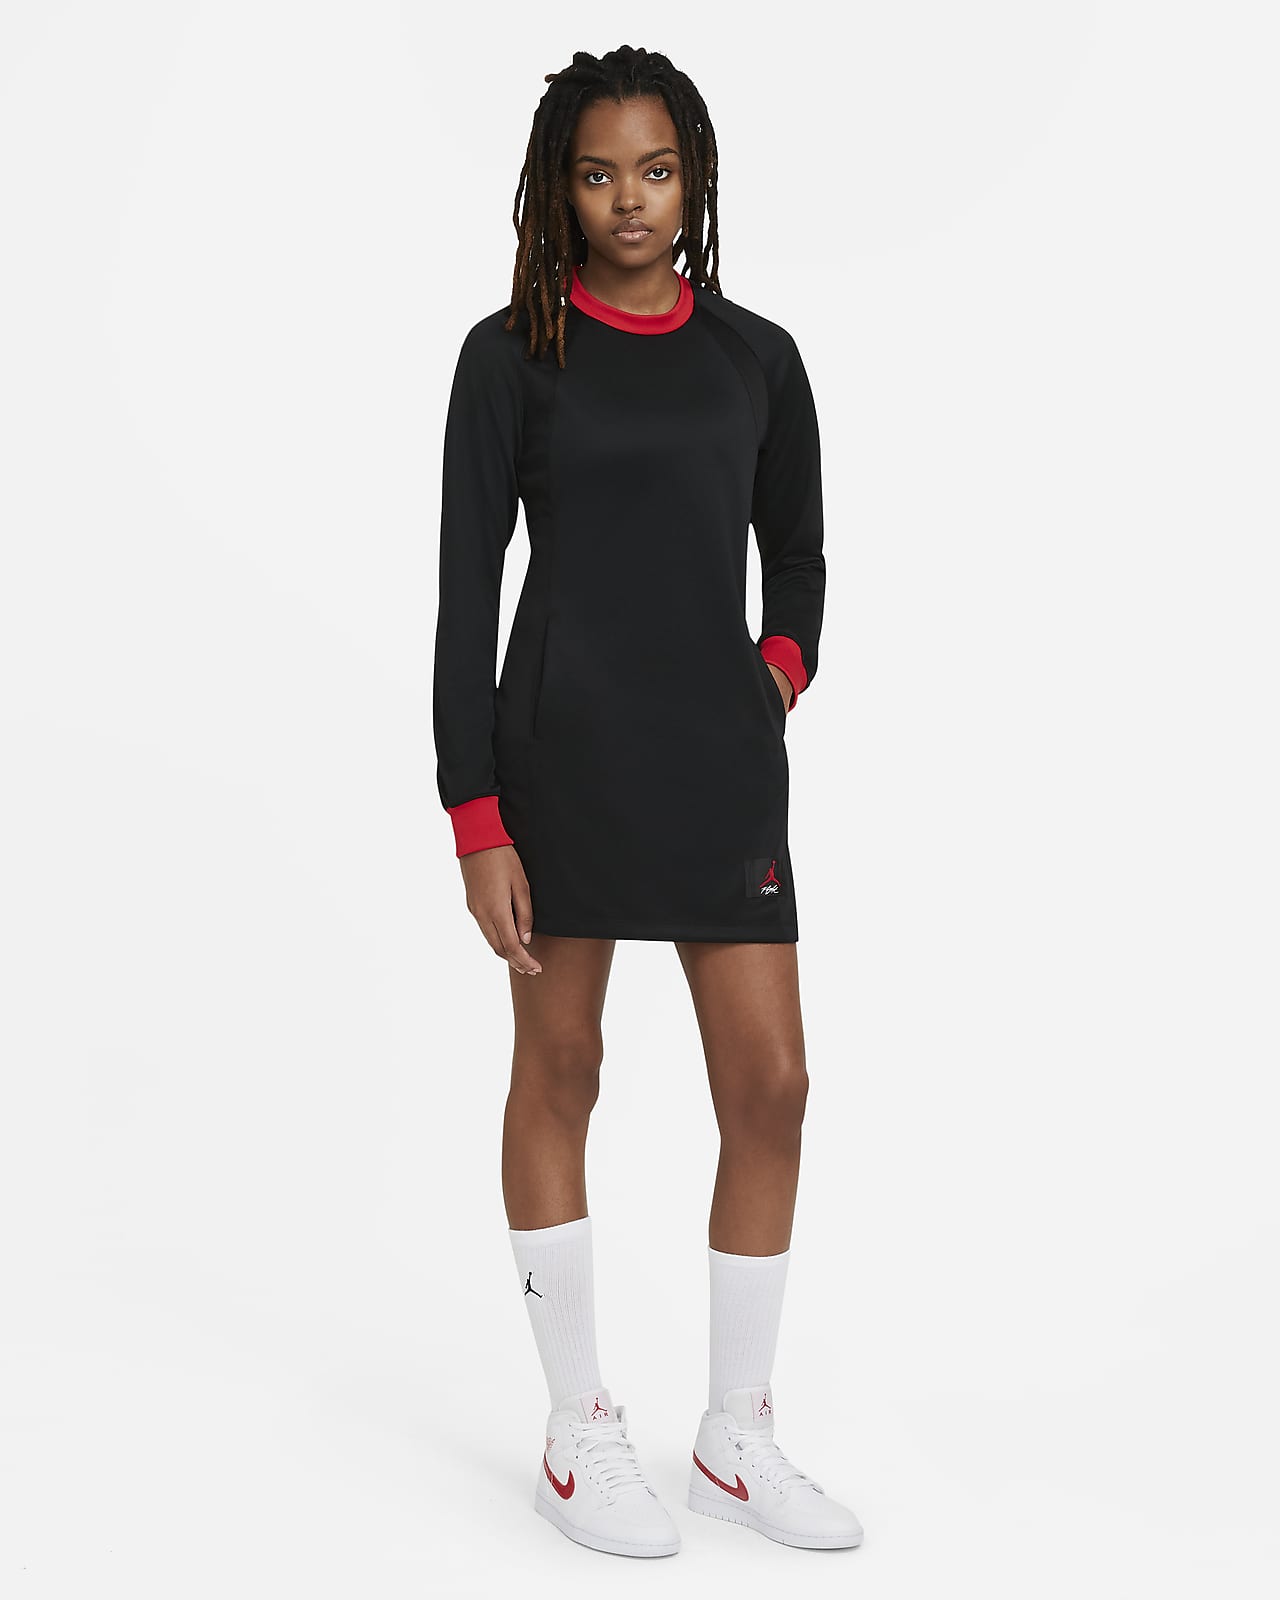 Jordan Women's Long-Sleeve Dress. Nike.com